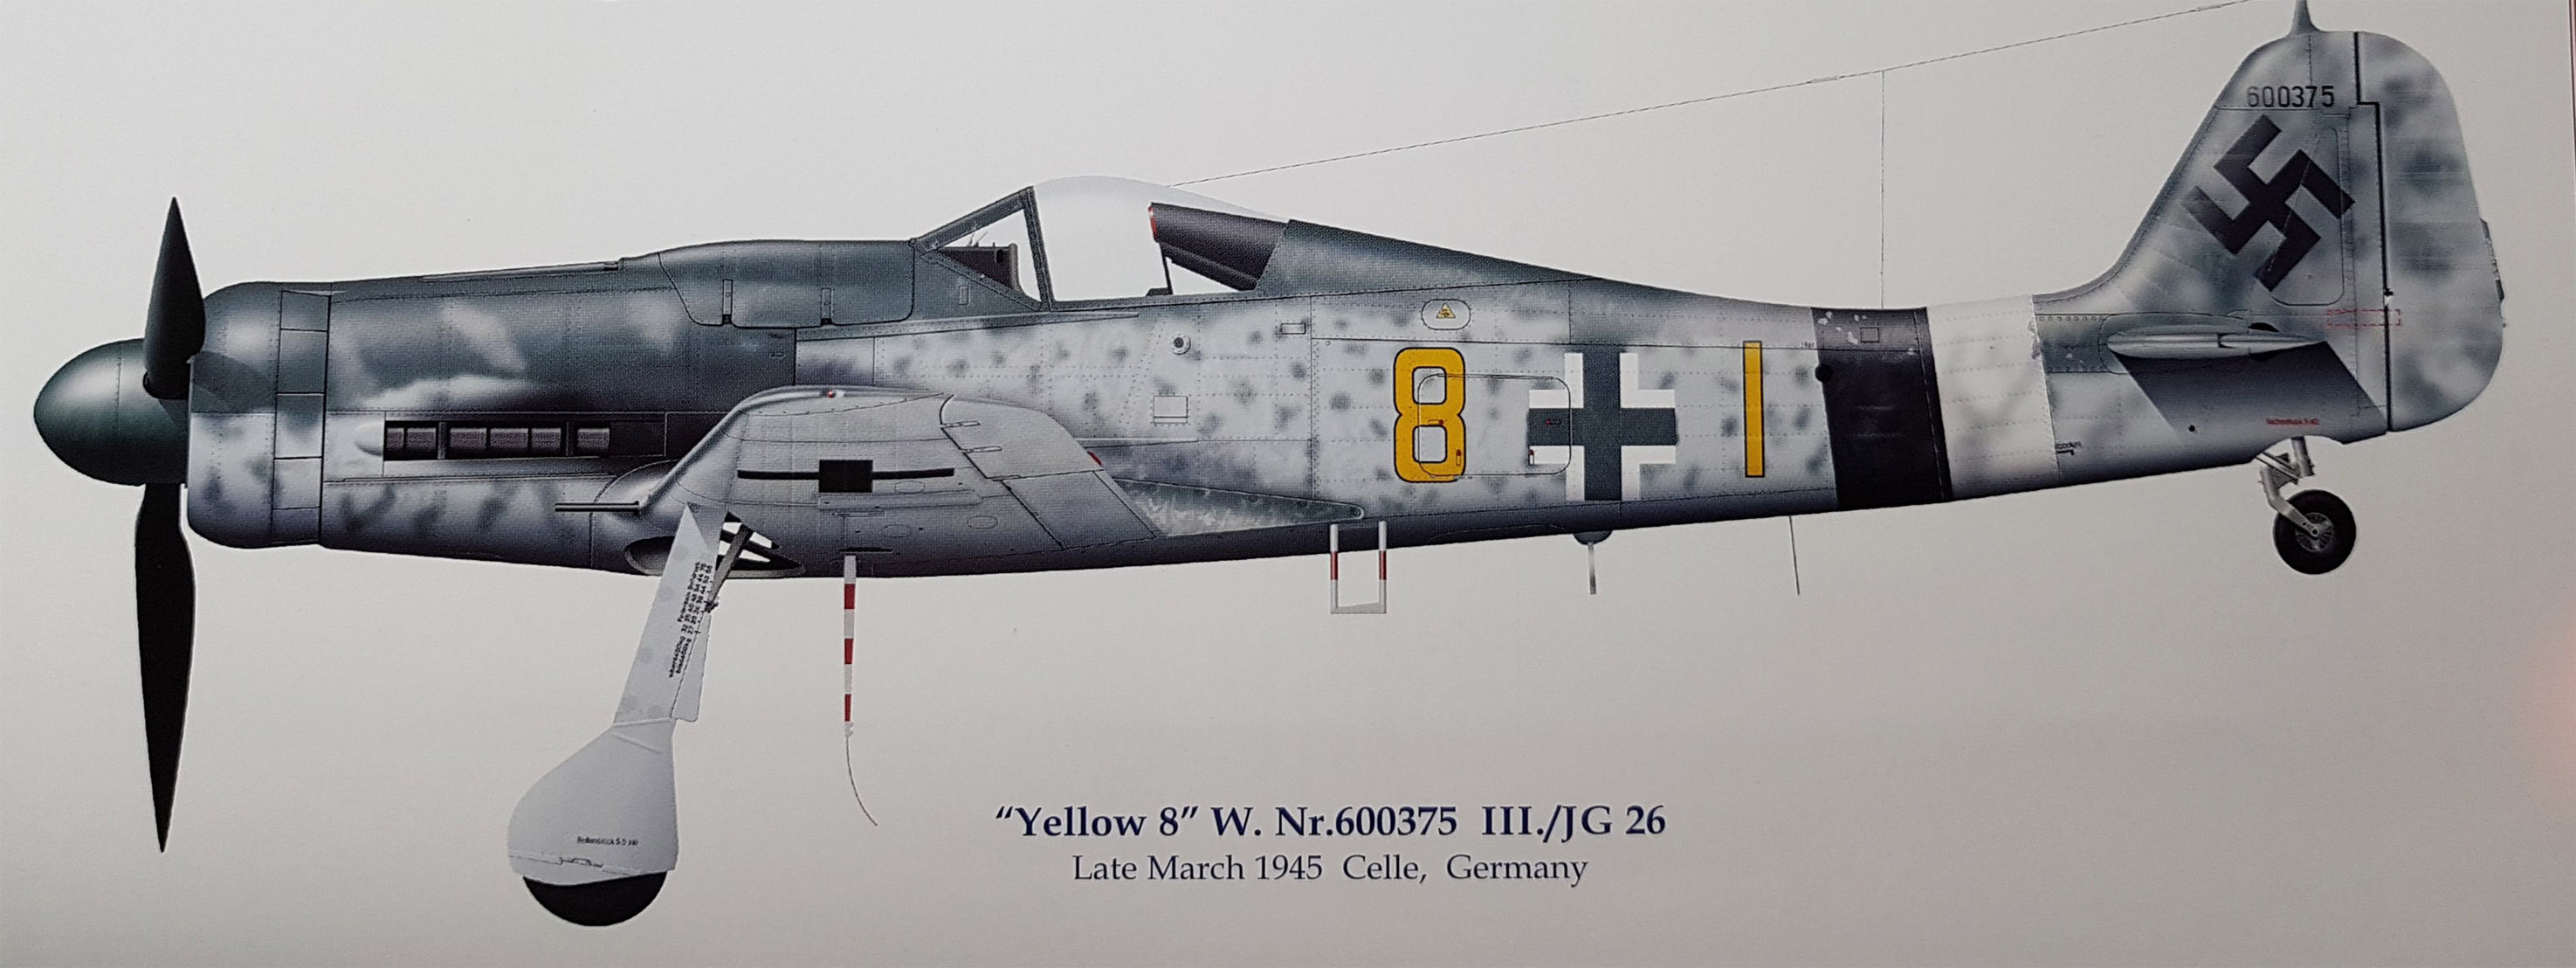 Asisbiz Focke Wulf Fw 190d9 9 Jg26 Yellow 8 Wnr 600375 Celle Germany